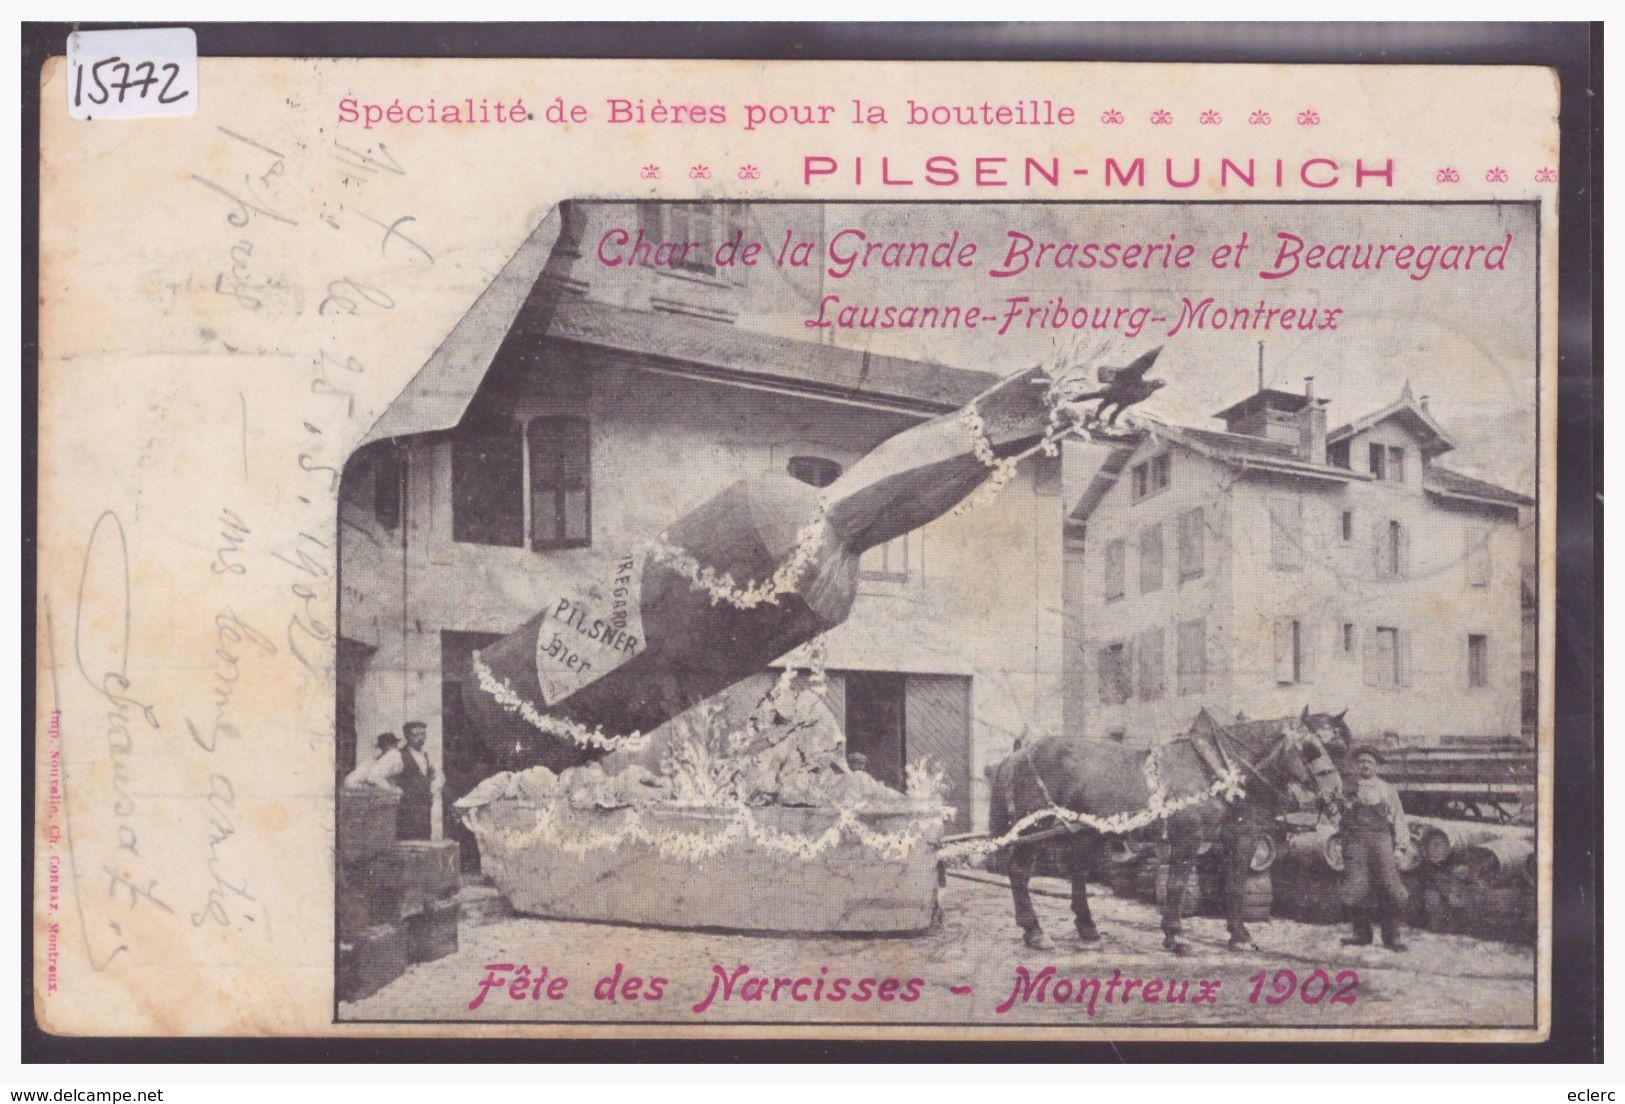 DISTRICT DE VEVEY - MONTREUX - FETE DES NARCISSES 1902 - PUBLICITE BIERE PILSEN MUNICH - ATTELAGE - TB - Bière